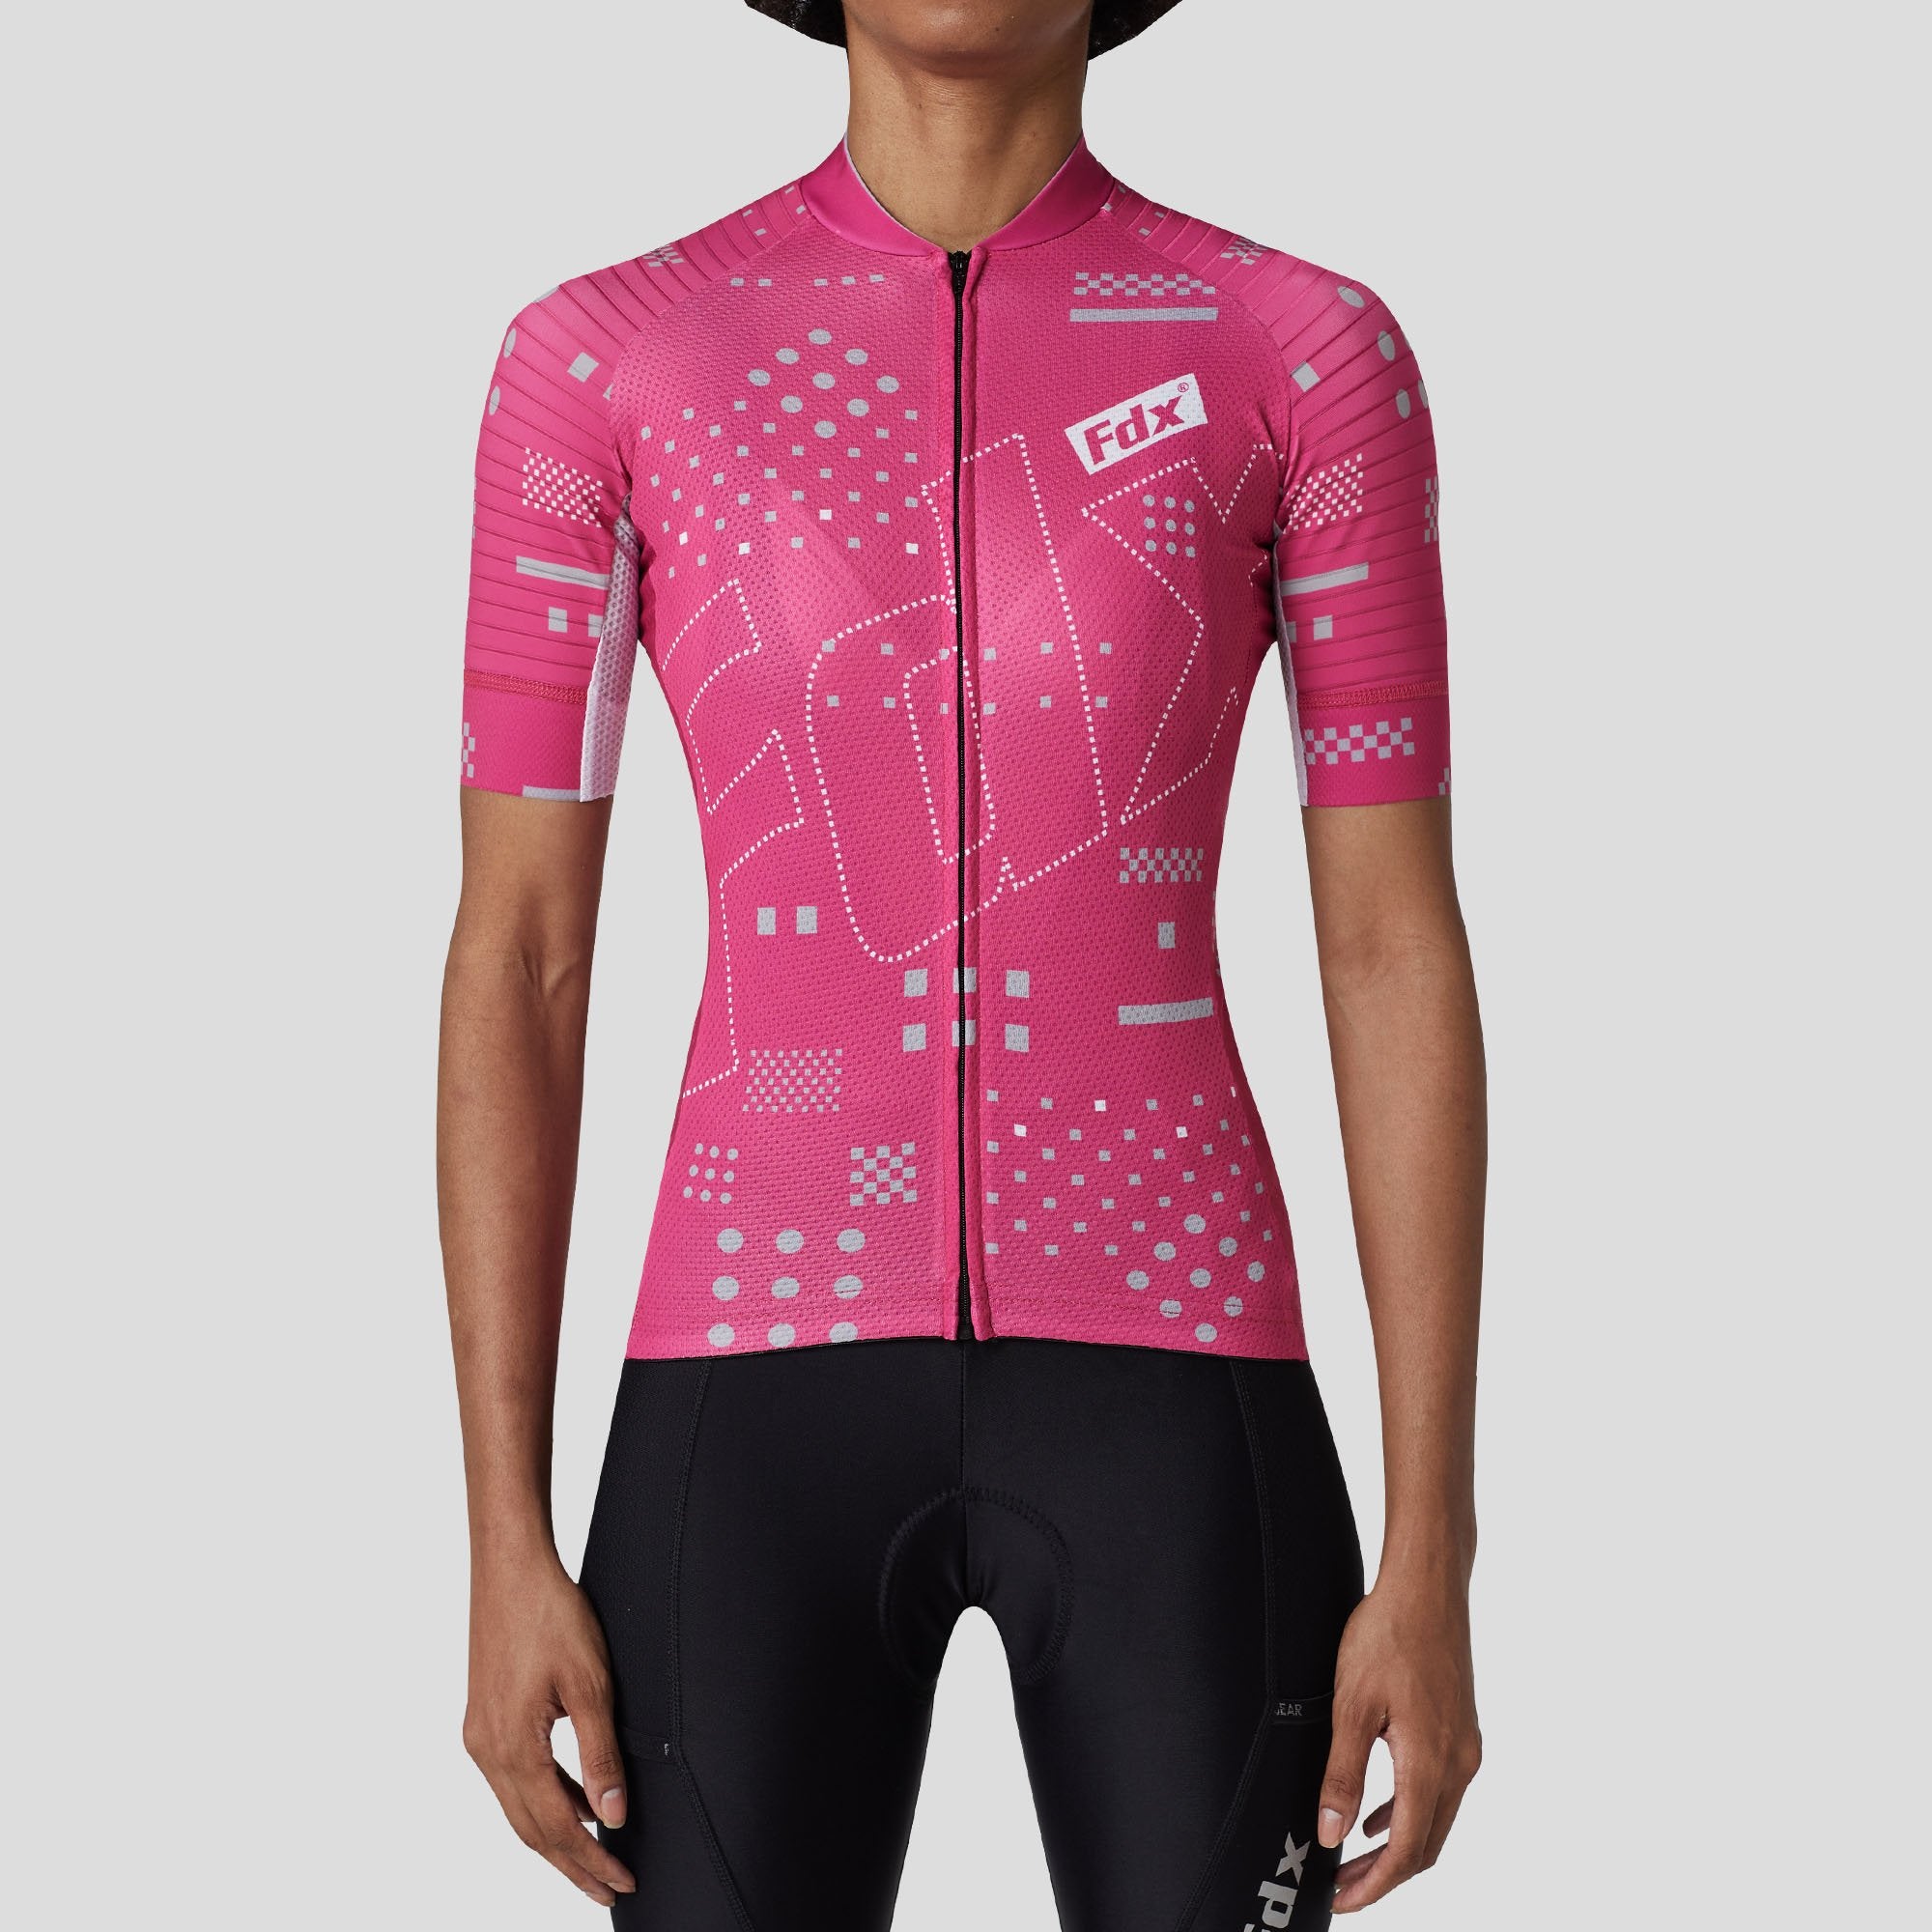 Fdx Womens Pink Short Sleeve Cycling Jersey for Summer Best Road Bike Wear Top Light Weight, Full Zipper, Pockets & Hi-viz Reflectors - All Day